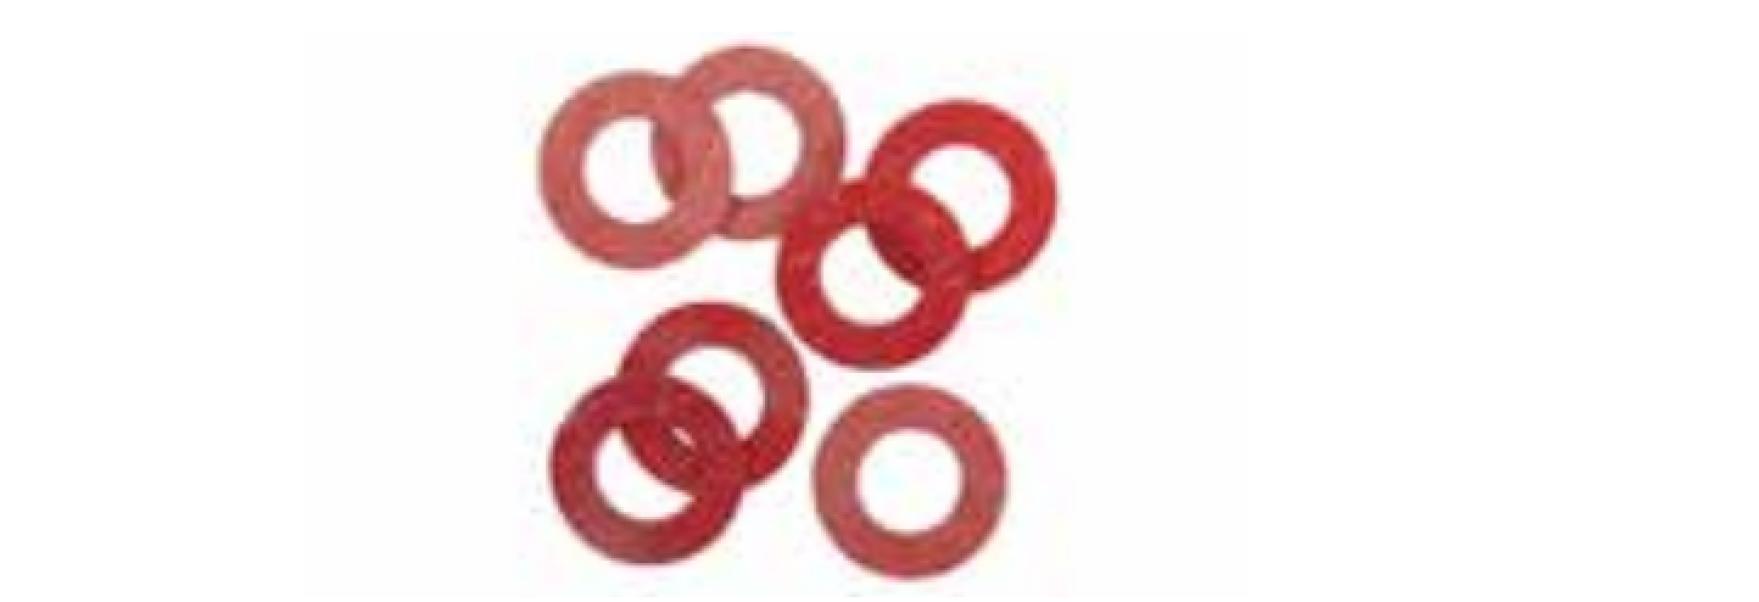 Guarnizioni Idro Bric in fibra diametro 1/2 pollici -  P0443 B 01